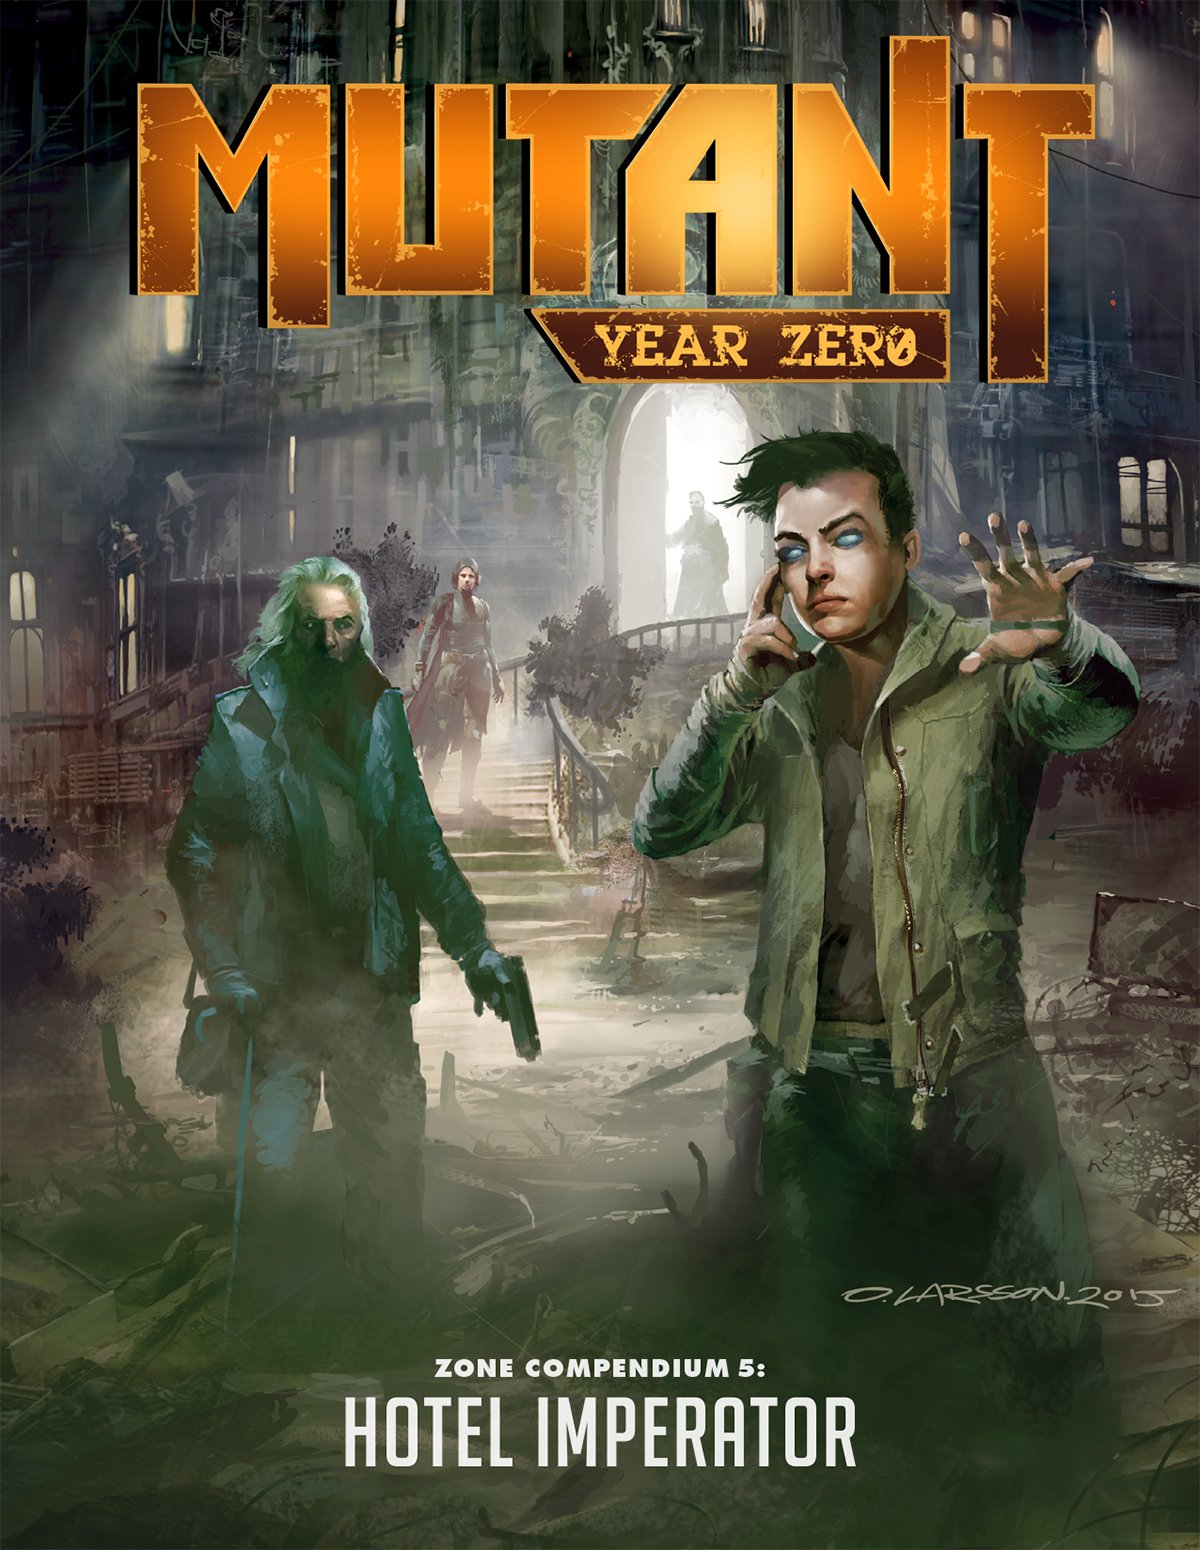 Mutant: Year Zero Zone Compendium 5: Hotel Imperator